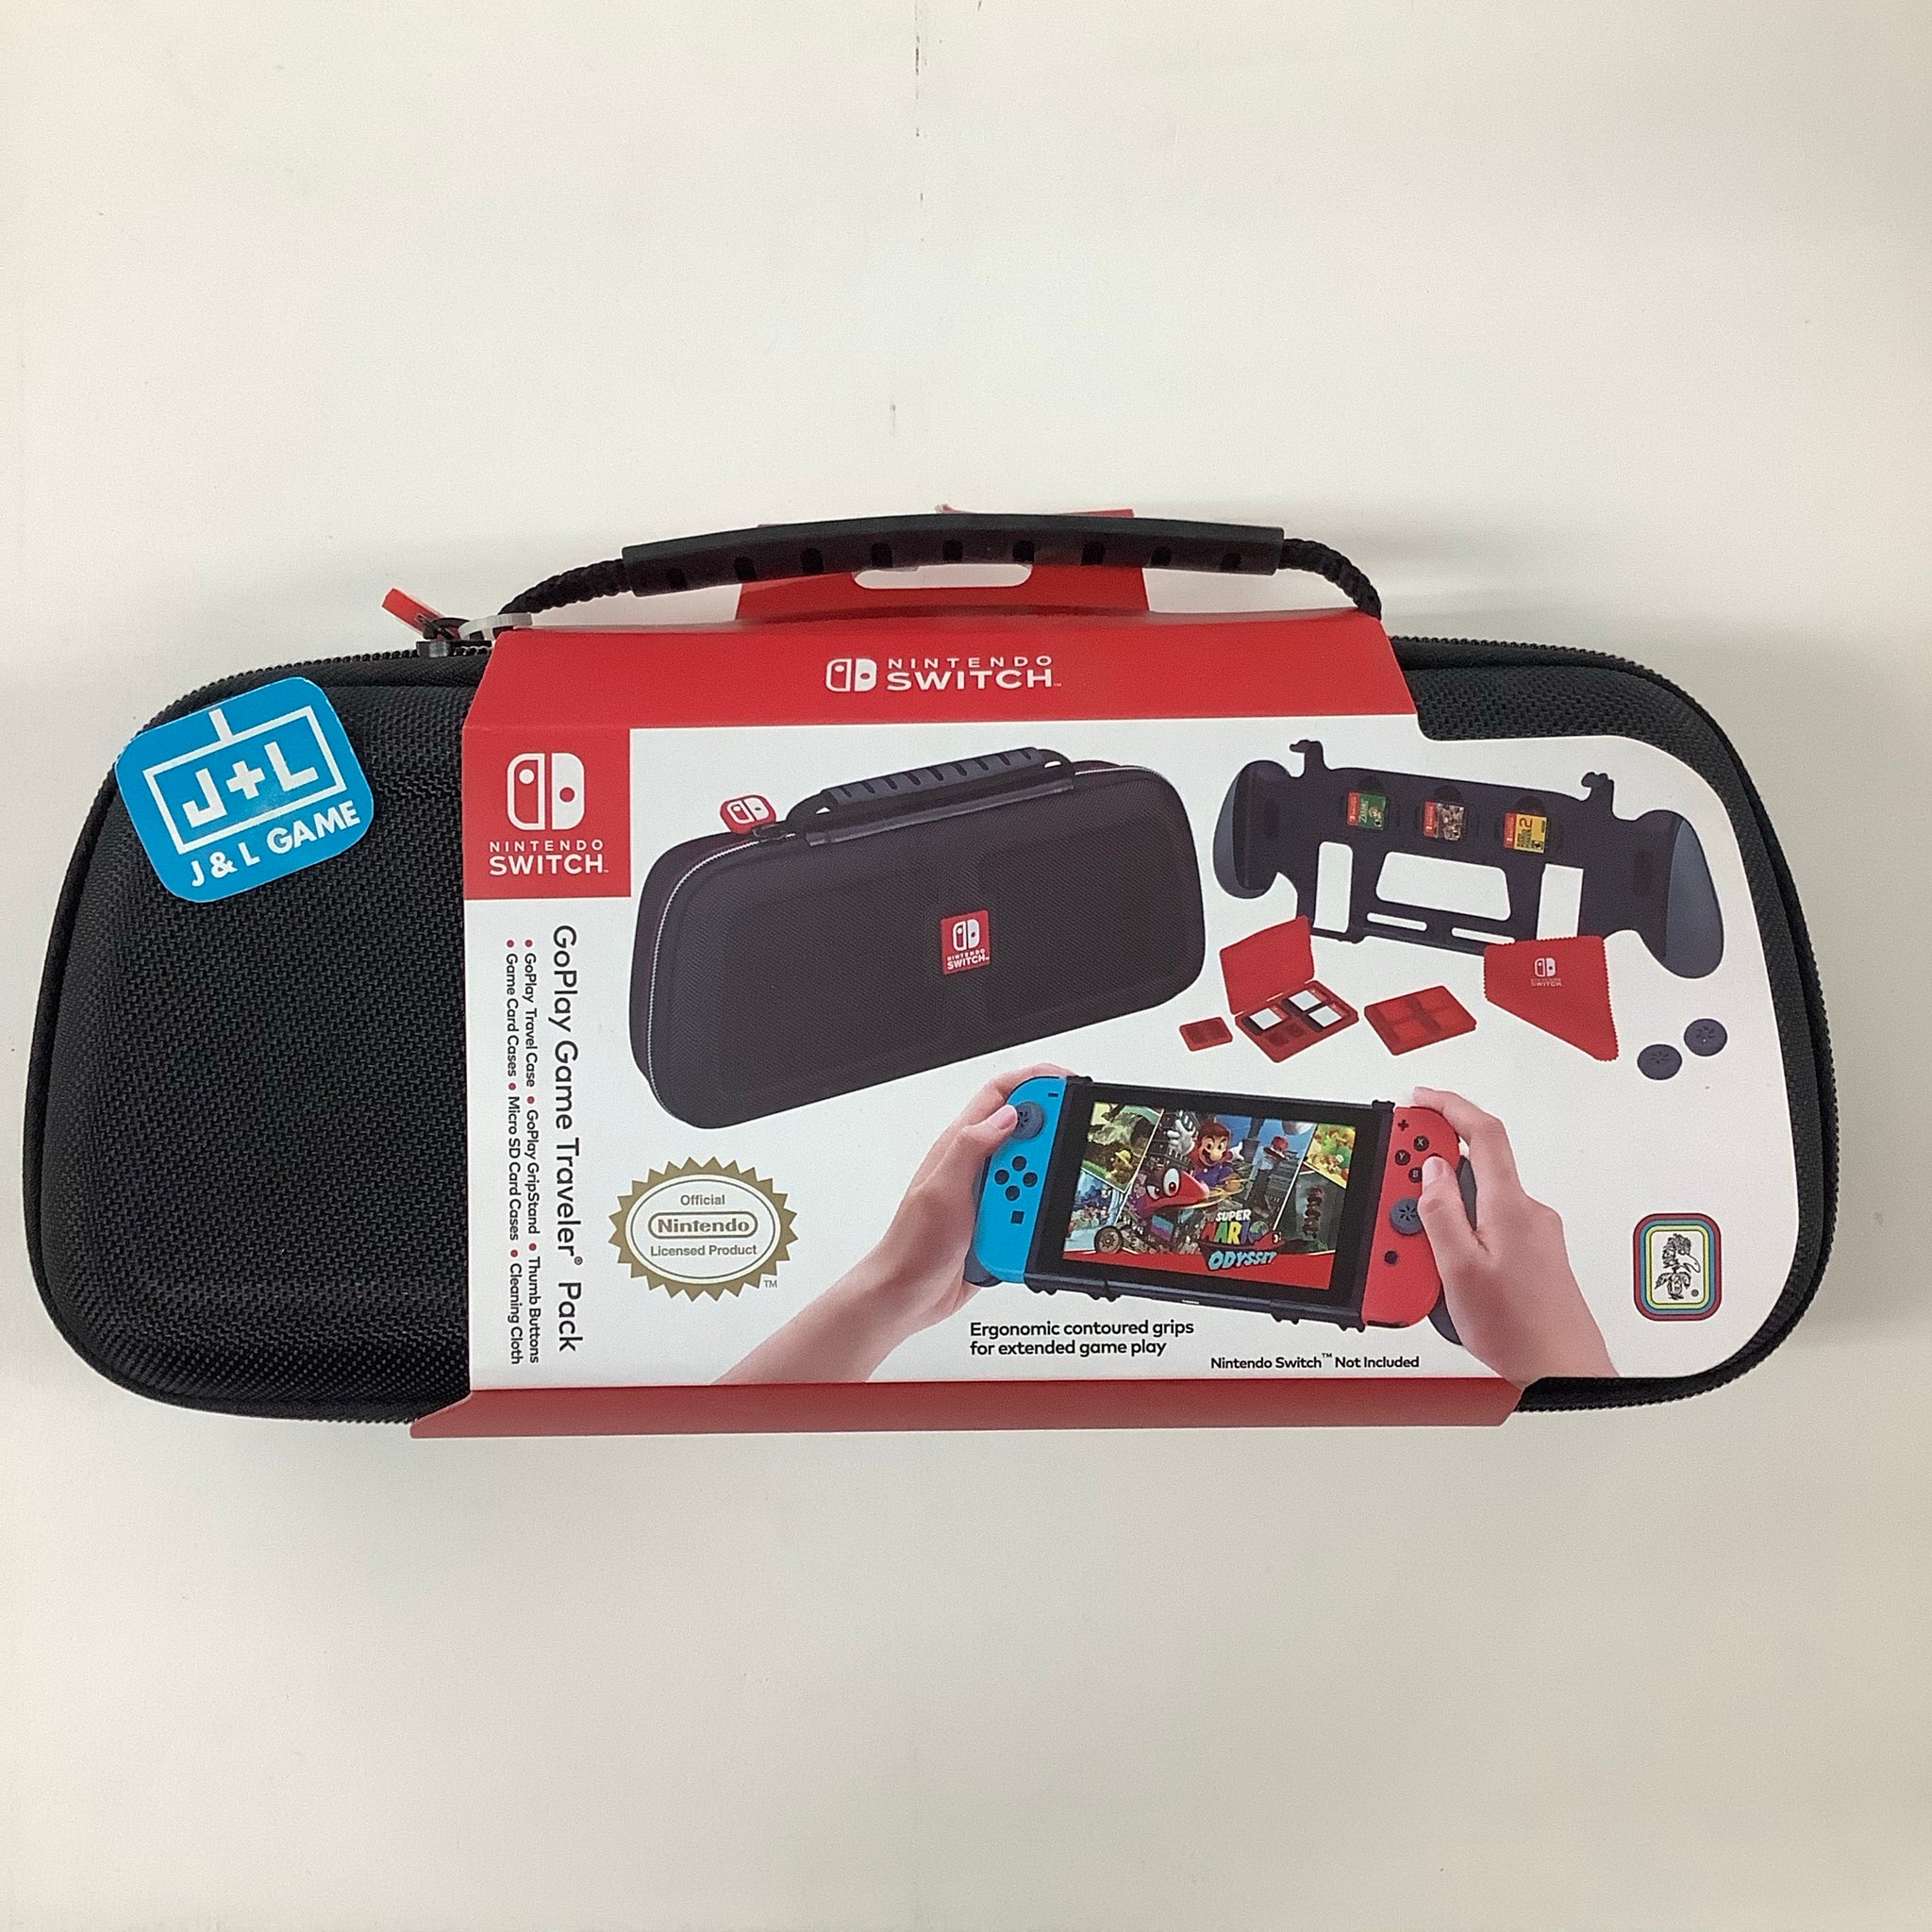 Nintendo Switch GoPlay Game Traveler Pack